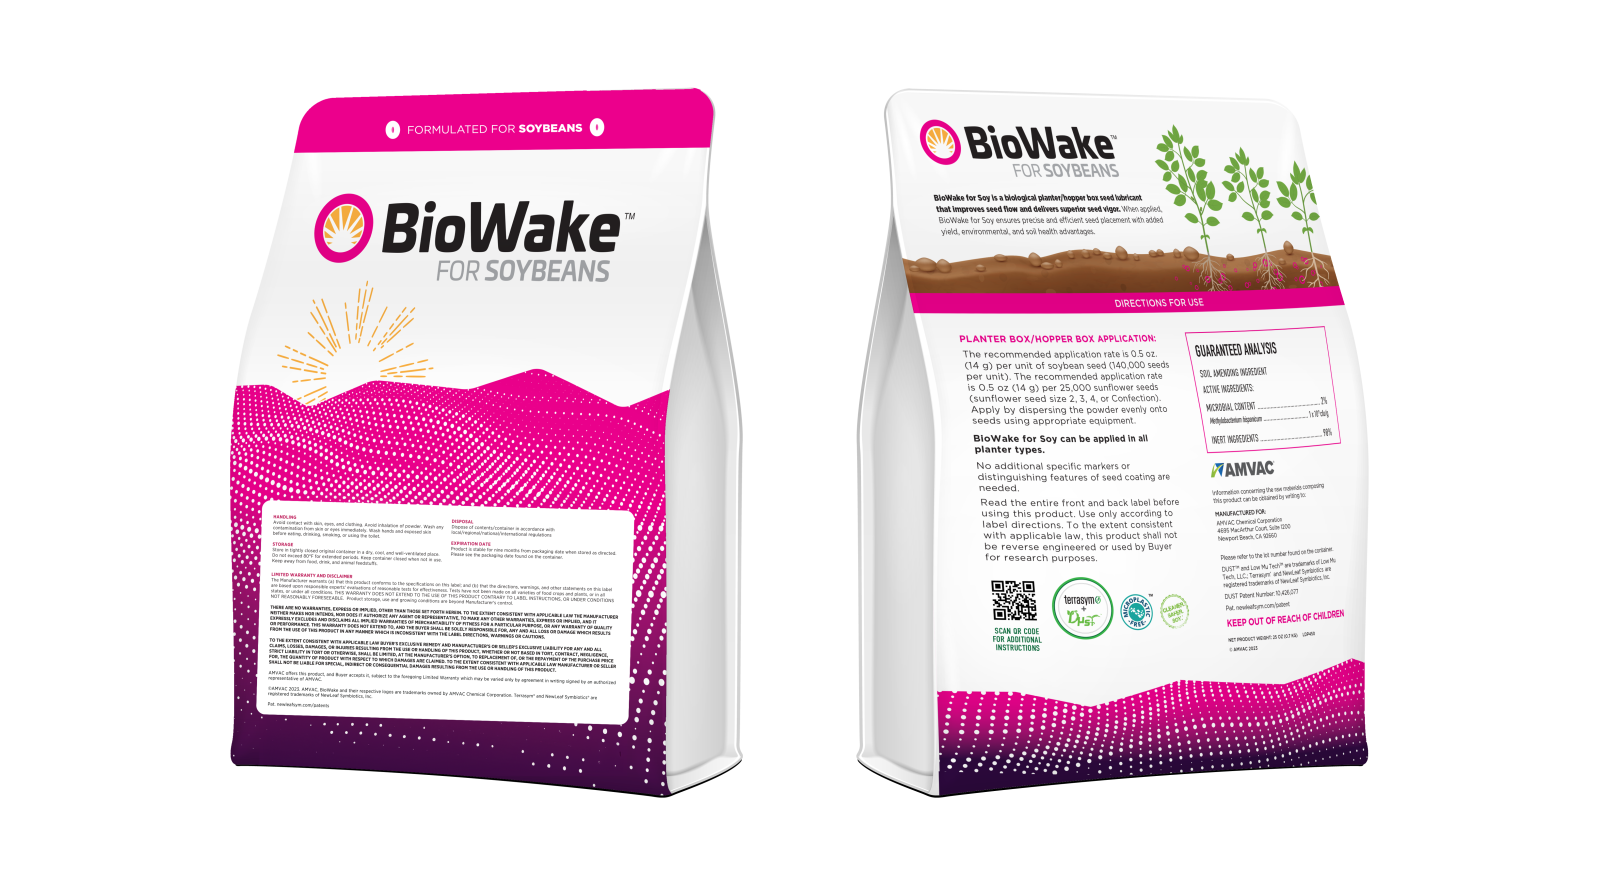 Biowake for Soybeans